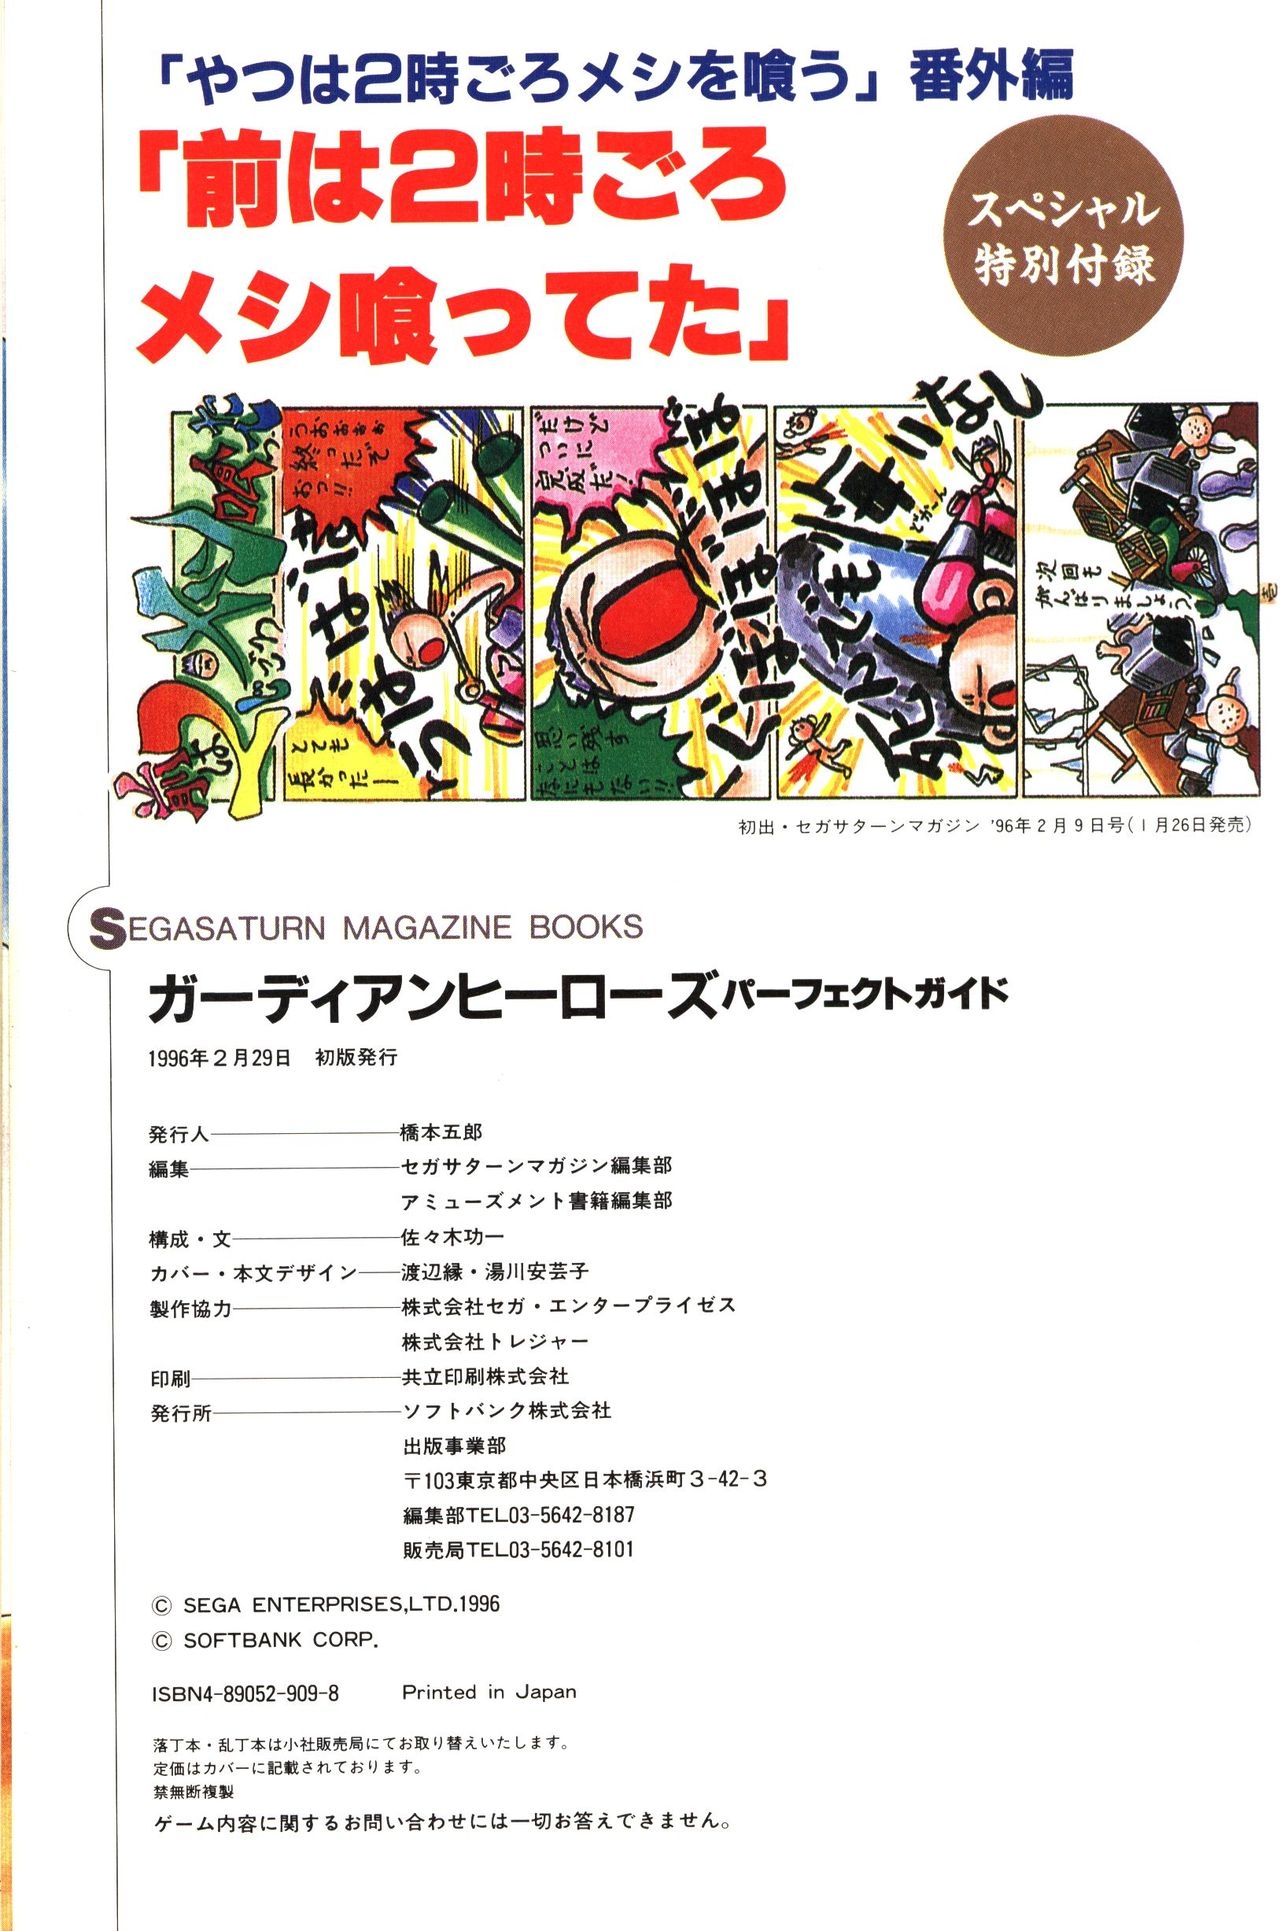 Guardian Heroes Perfect Guide (Sega Saturn magazine books) 130